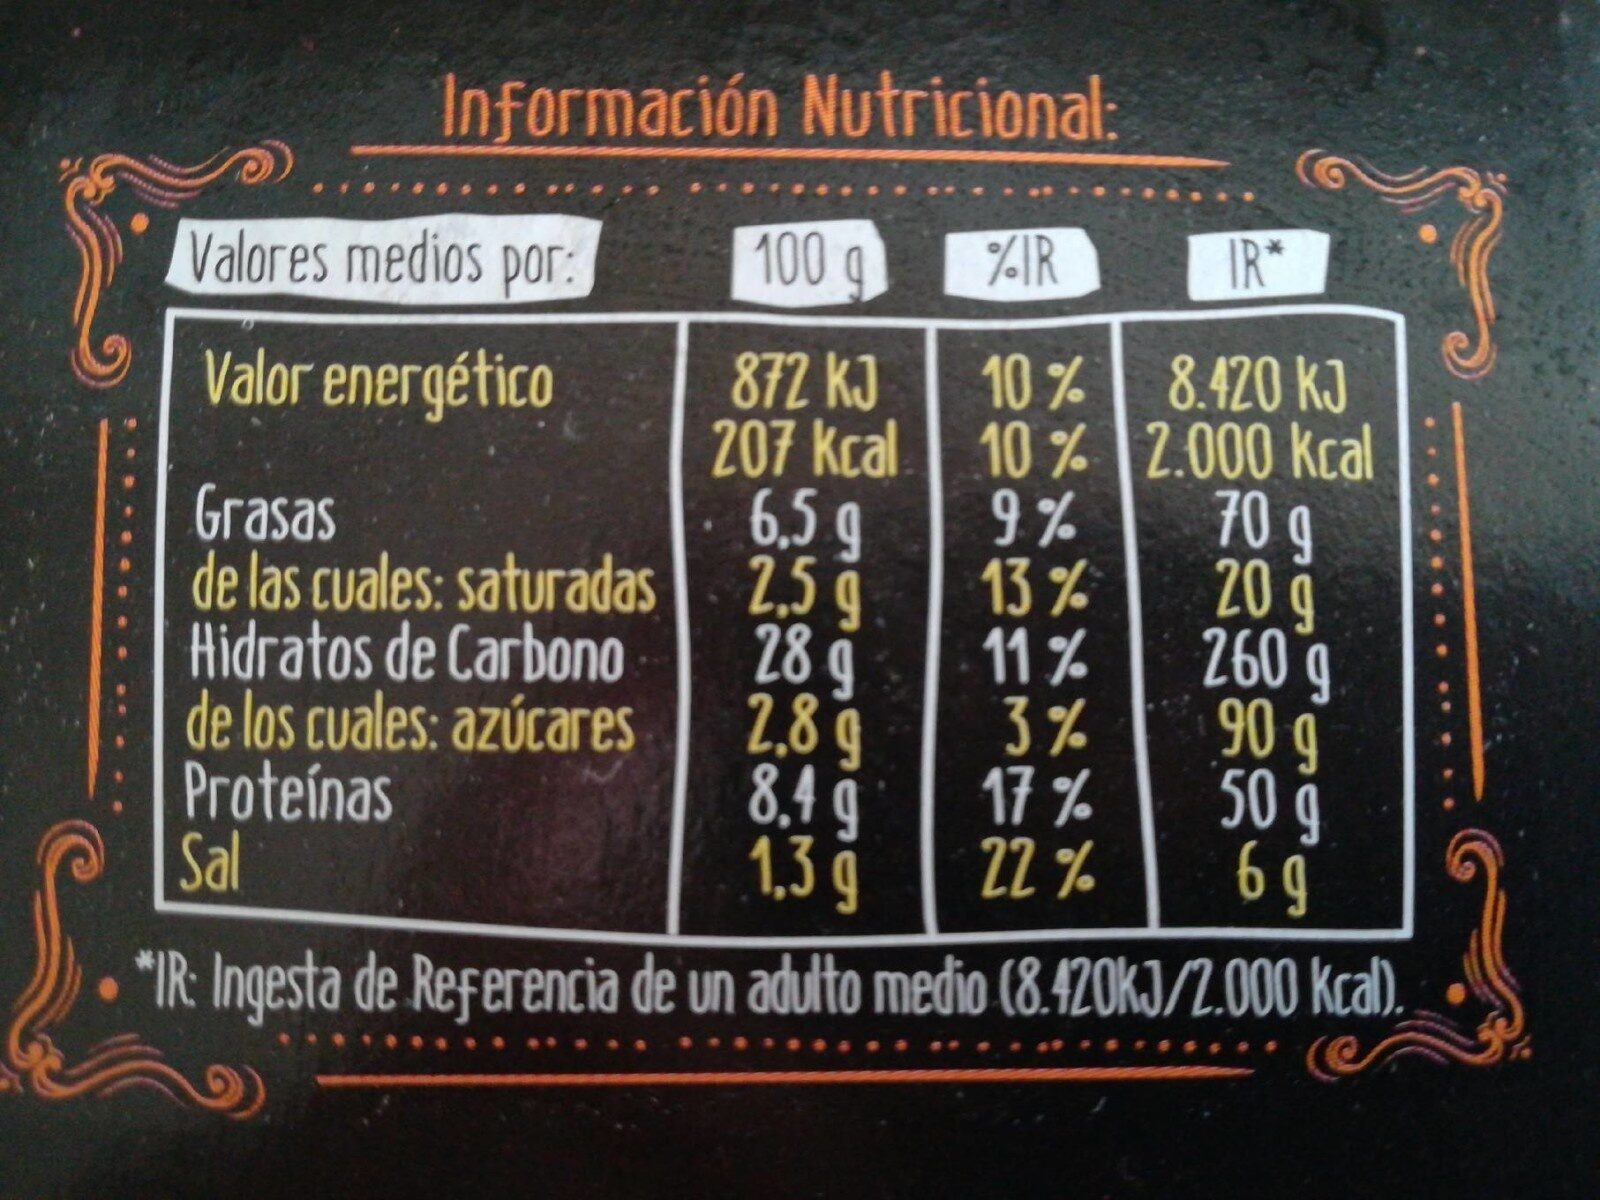 Pizza de pollo - Informació nutricional - es